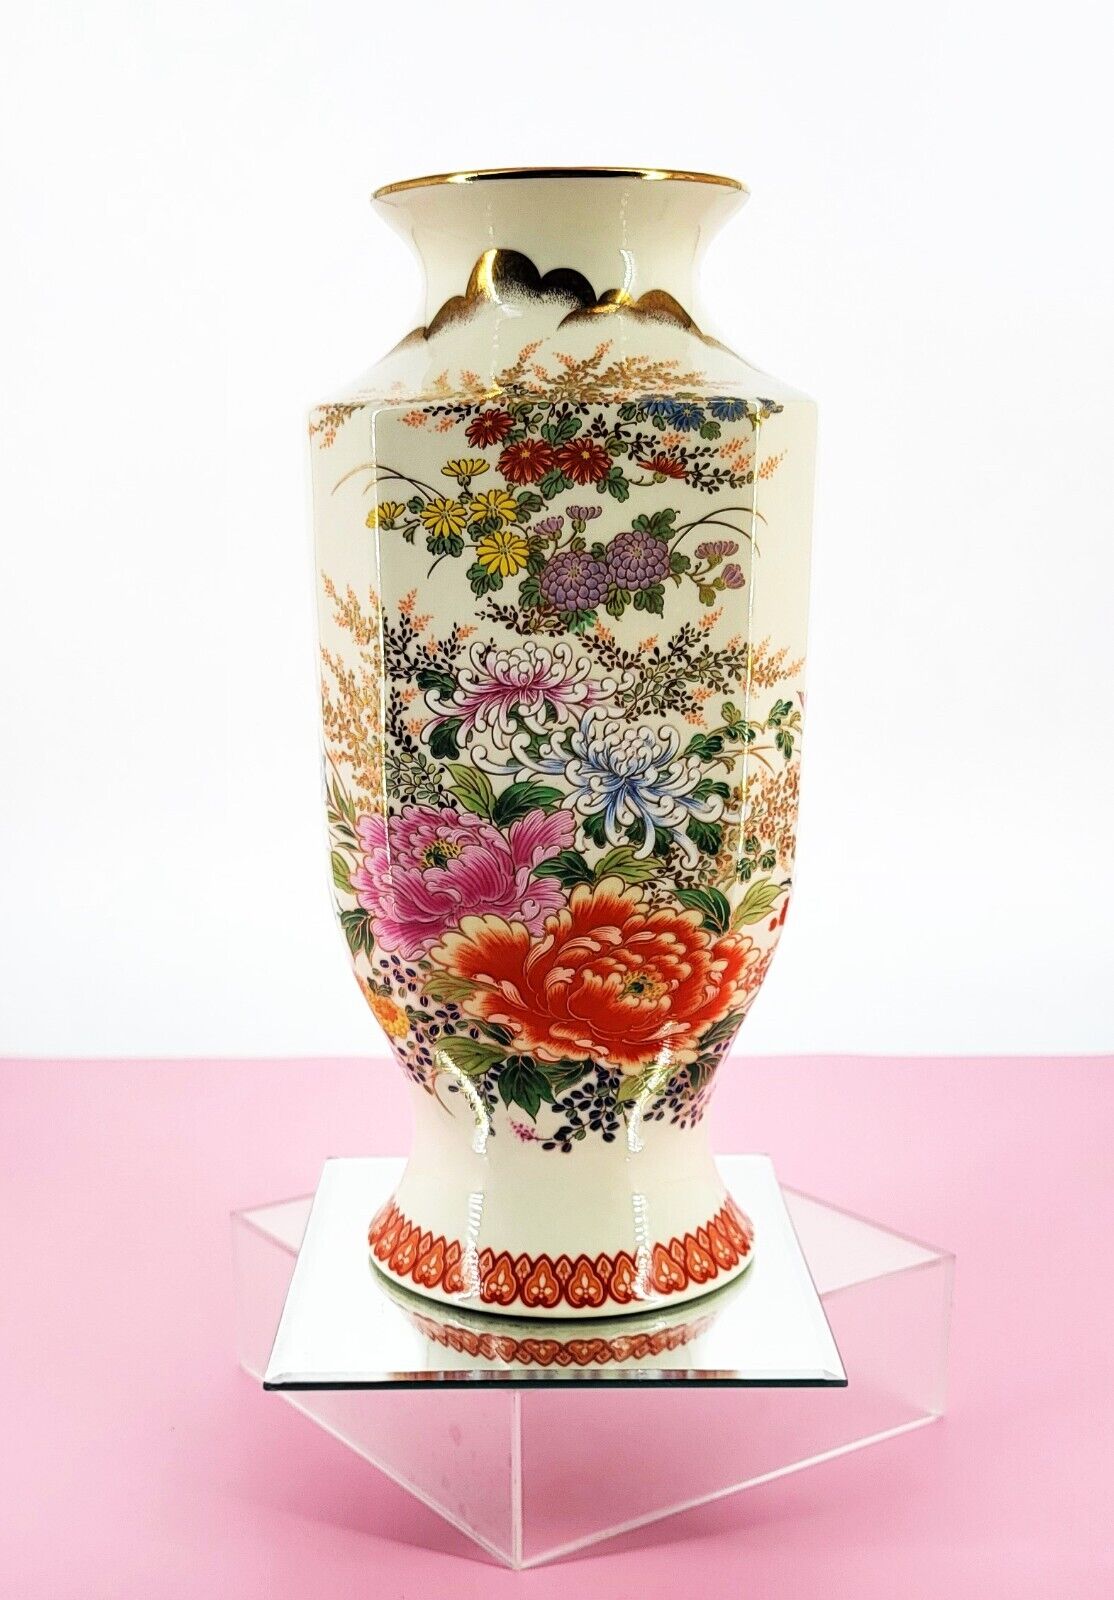 Shibata Japan Porcelain Vintage Large Vase Chrysanthemum Flowers Gold Metallic